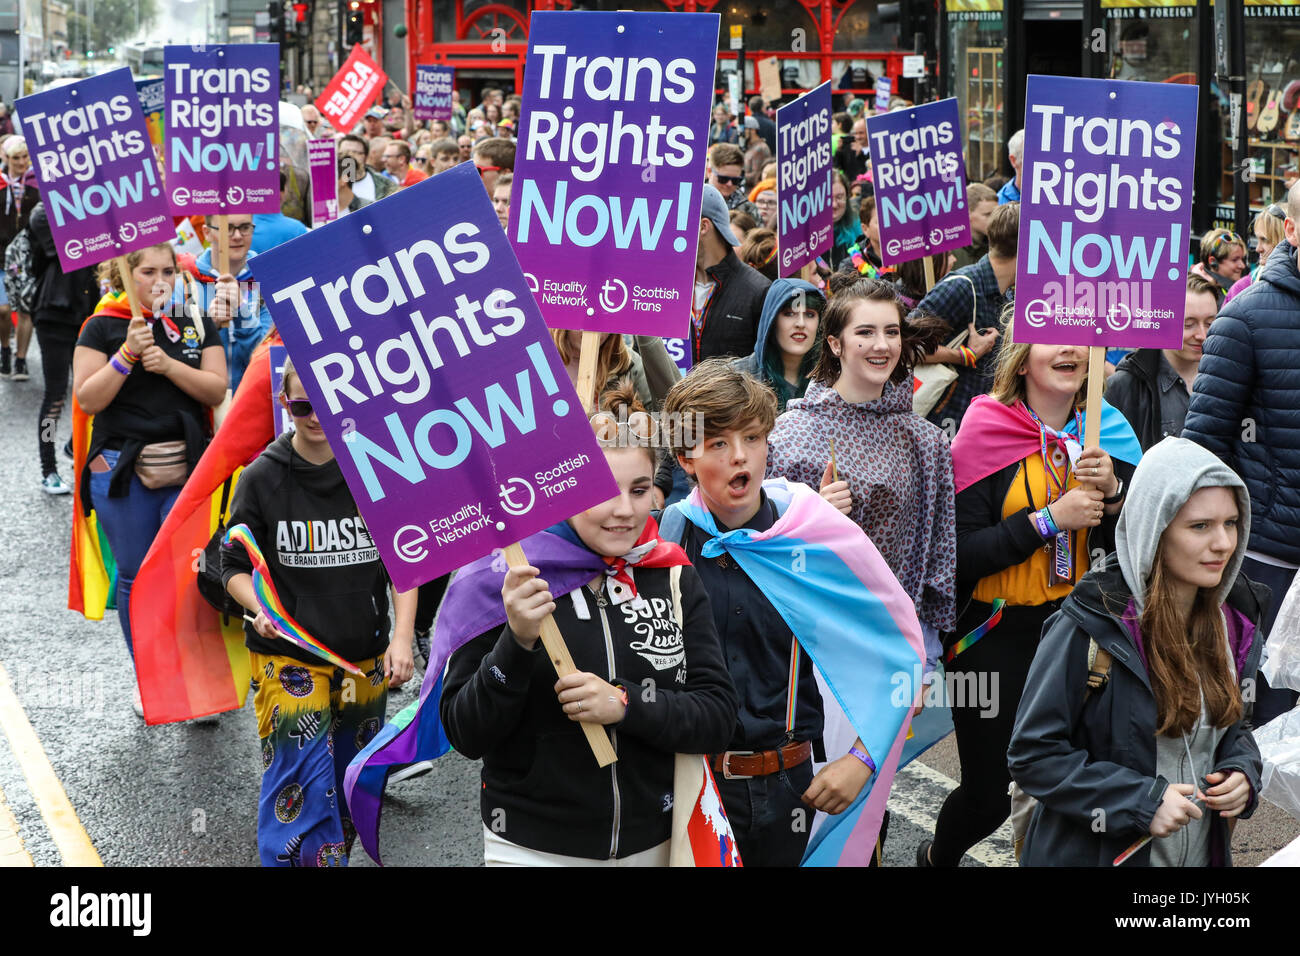 Des milliers de personnes descendent dans les rues du défilé gay Pride en plein cœur du centre-ville de Glasgow. Des centaines d'entreprises et de groupes sociaux montrent leur soutien aux droits LGBT et Trans à l'événement. Banque D'Images